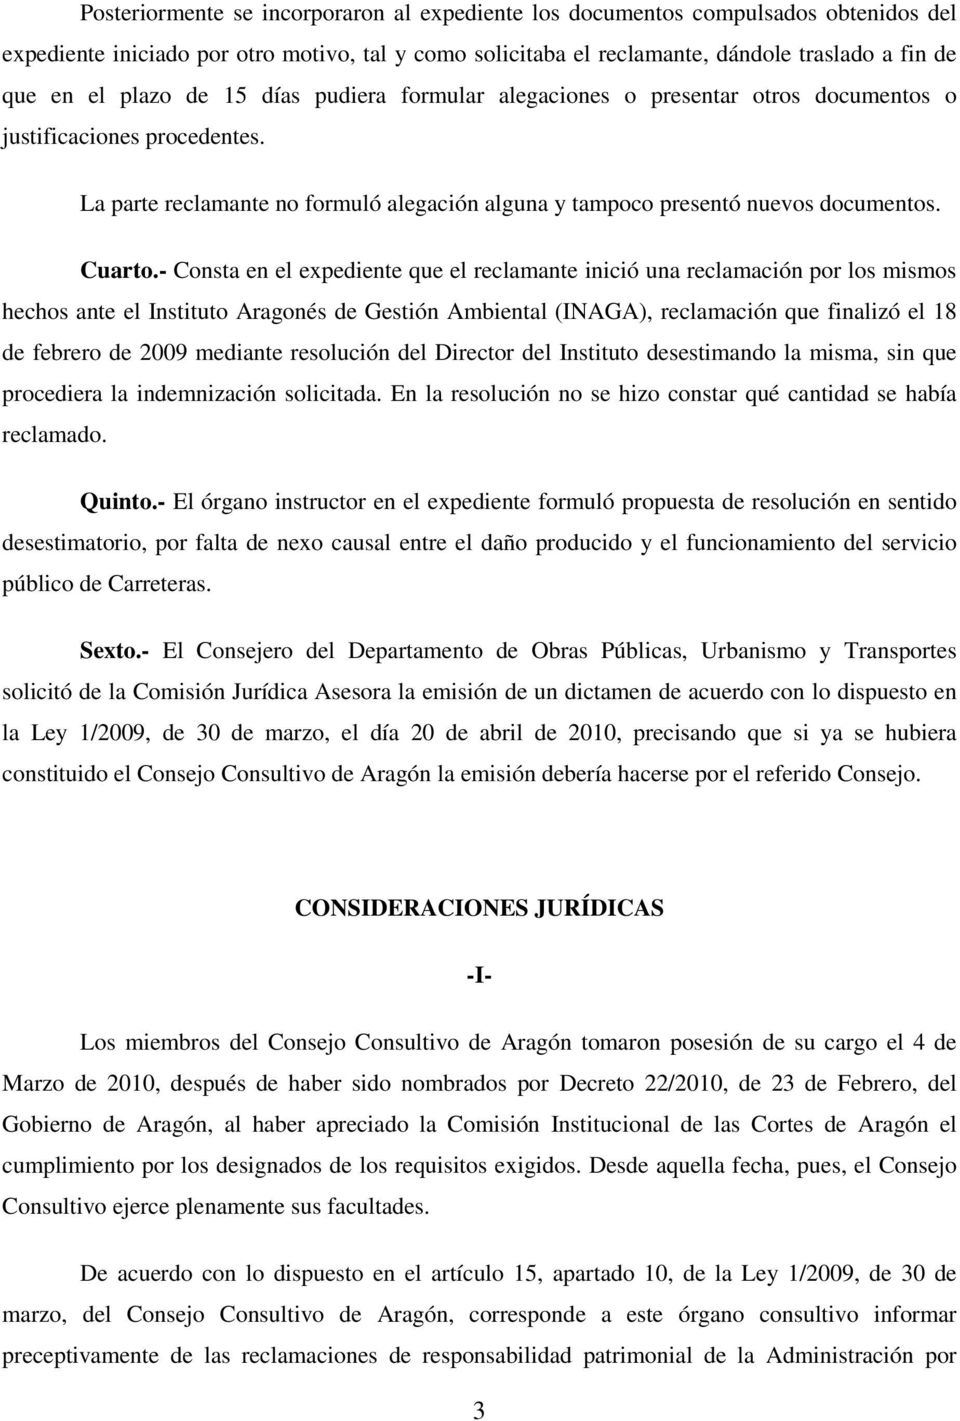 - Consta en el expediente que el reclamante inició una reclamación por los mismos hechos ante el Instituto Aragonés de Gestión Ambiental (INAGA), reclamación que finalizó el 18 de febrero de 2009